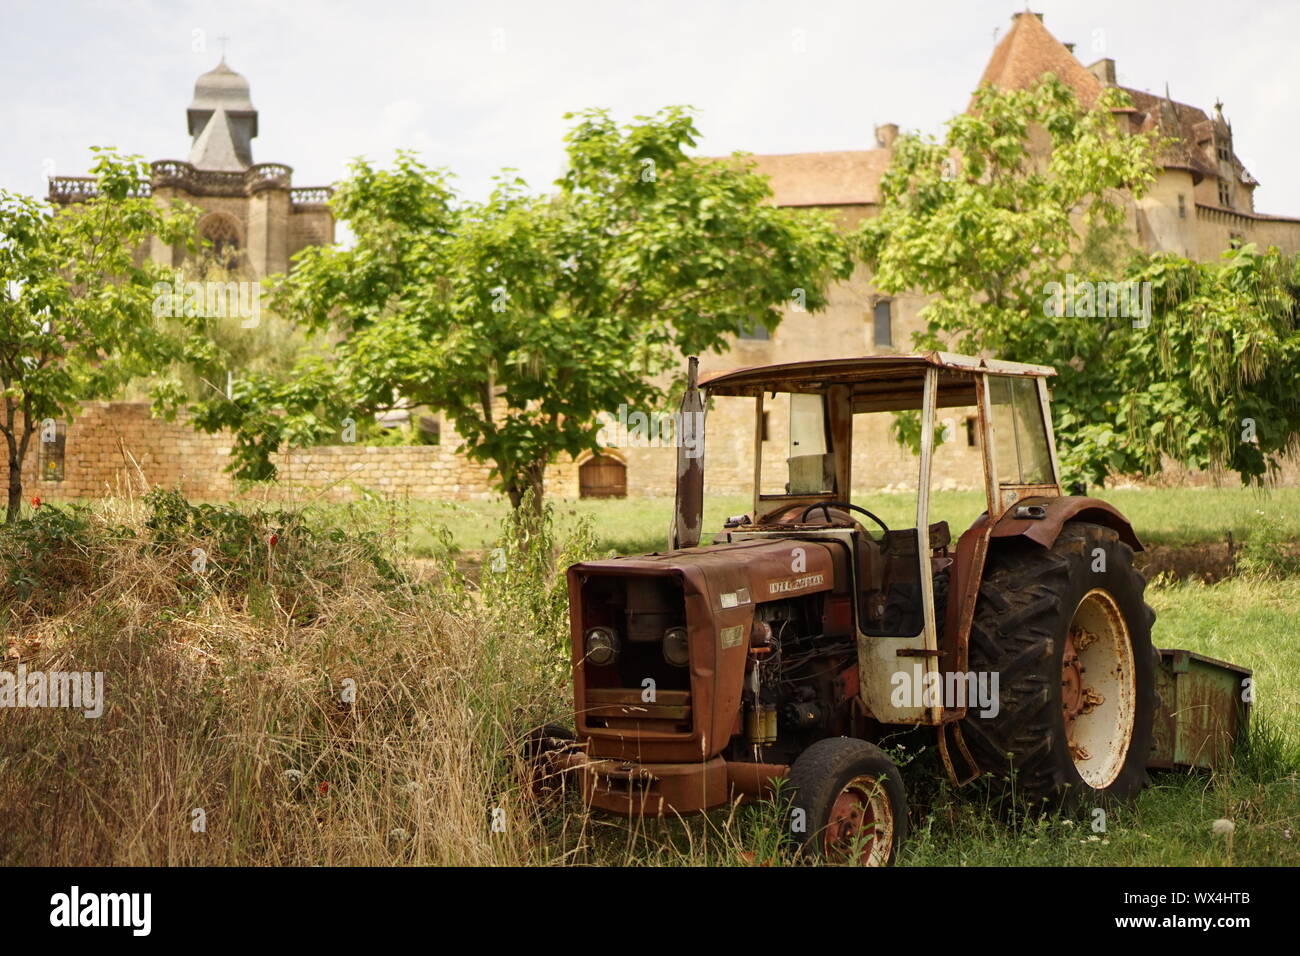 Un rosso vecchio arrugginito trattore parcheggiato in una fattoria orchard nelle zone rurali in Francia con il villaggio in background Foto Stock